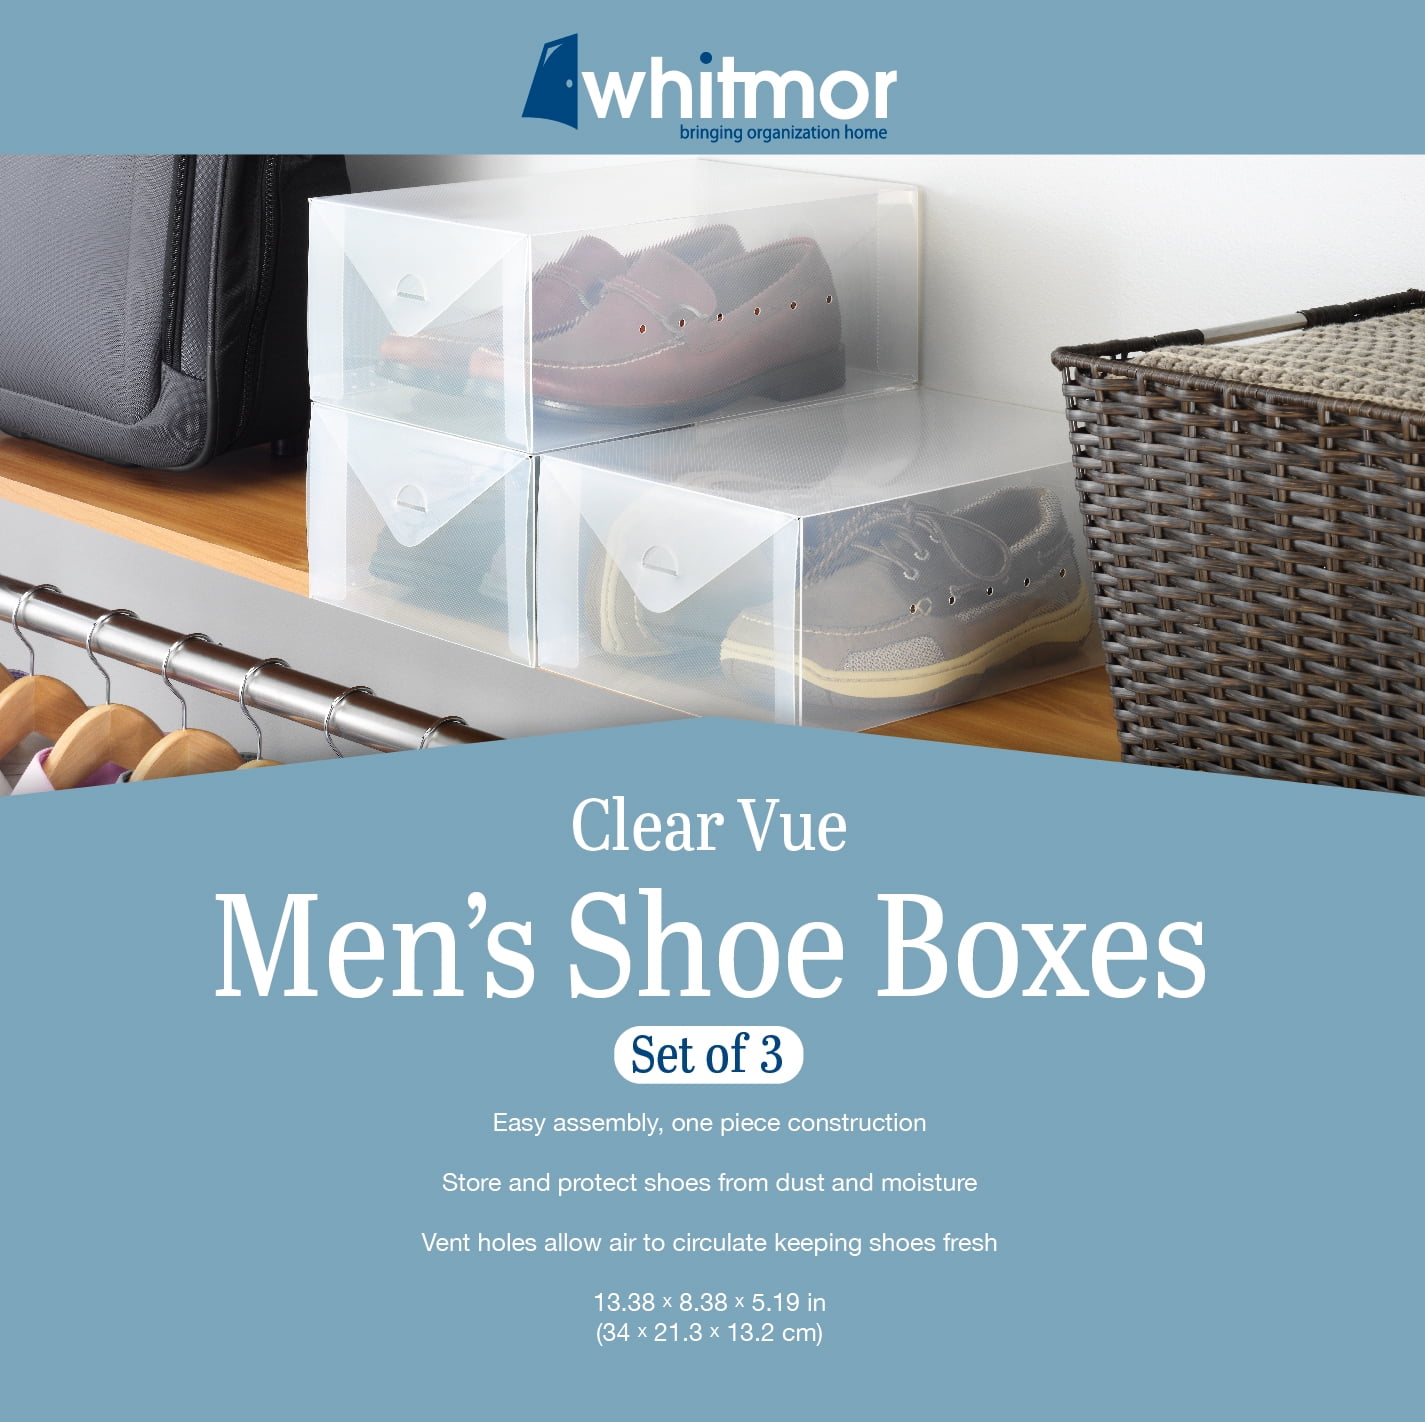 Our Men's Shoe Box